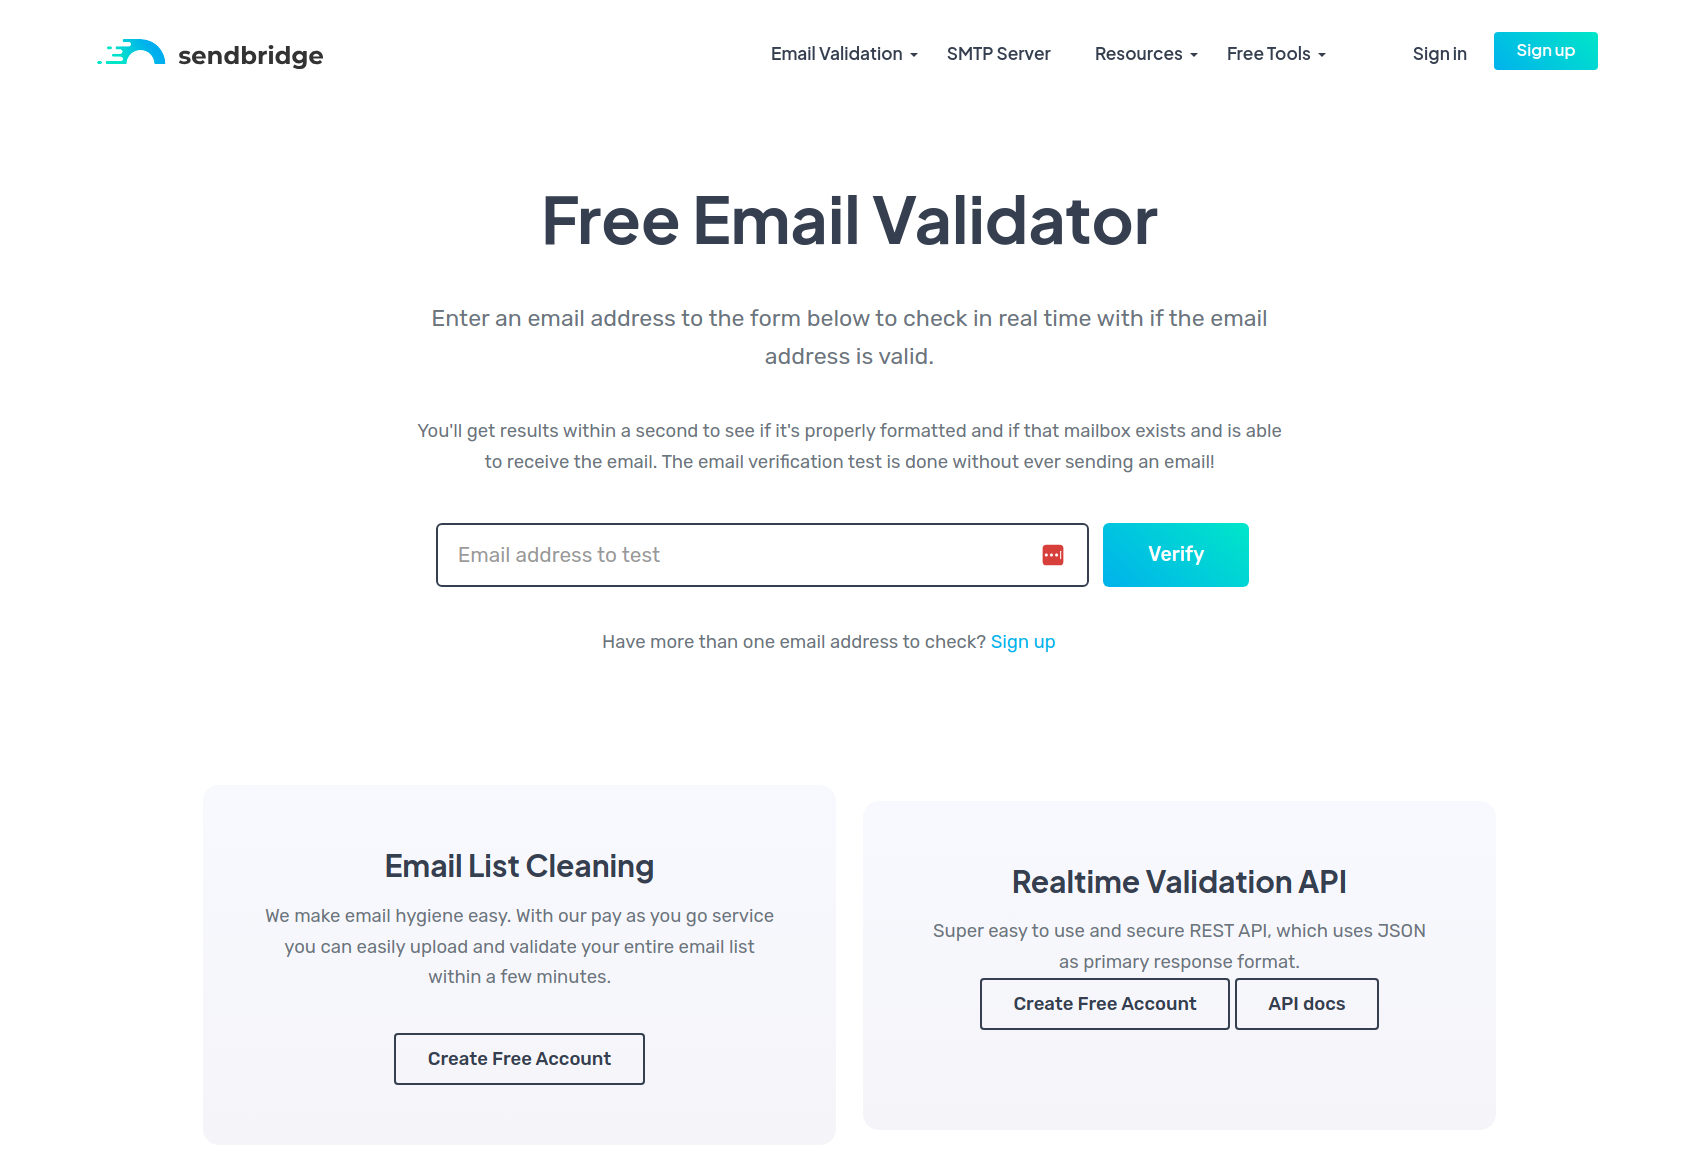 SendBridge Free Email Validator